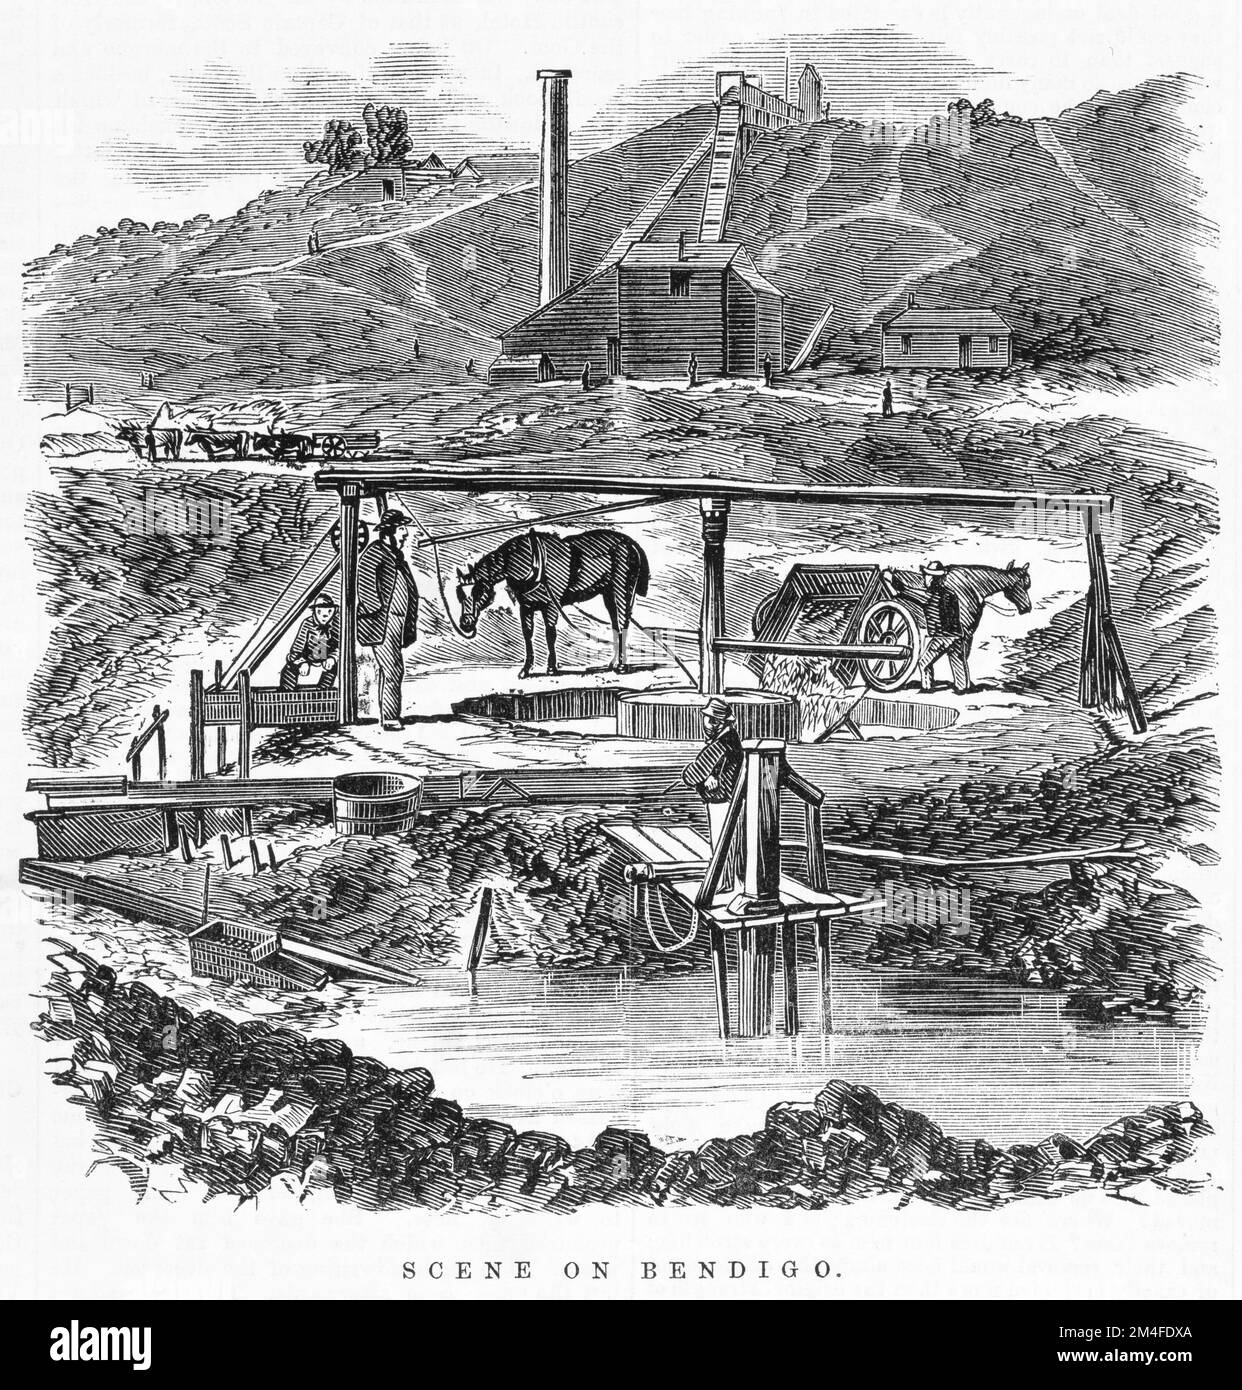 Szene Auf Bendigo. Illustration aus der australischen Zeitung von 1864. Zeigt Goldgruben im Bendigo-Bezirk. Stockfoto